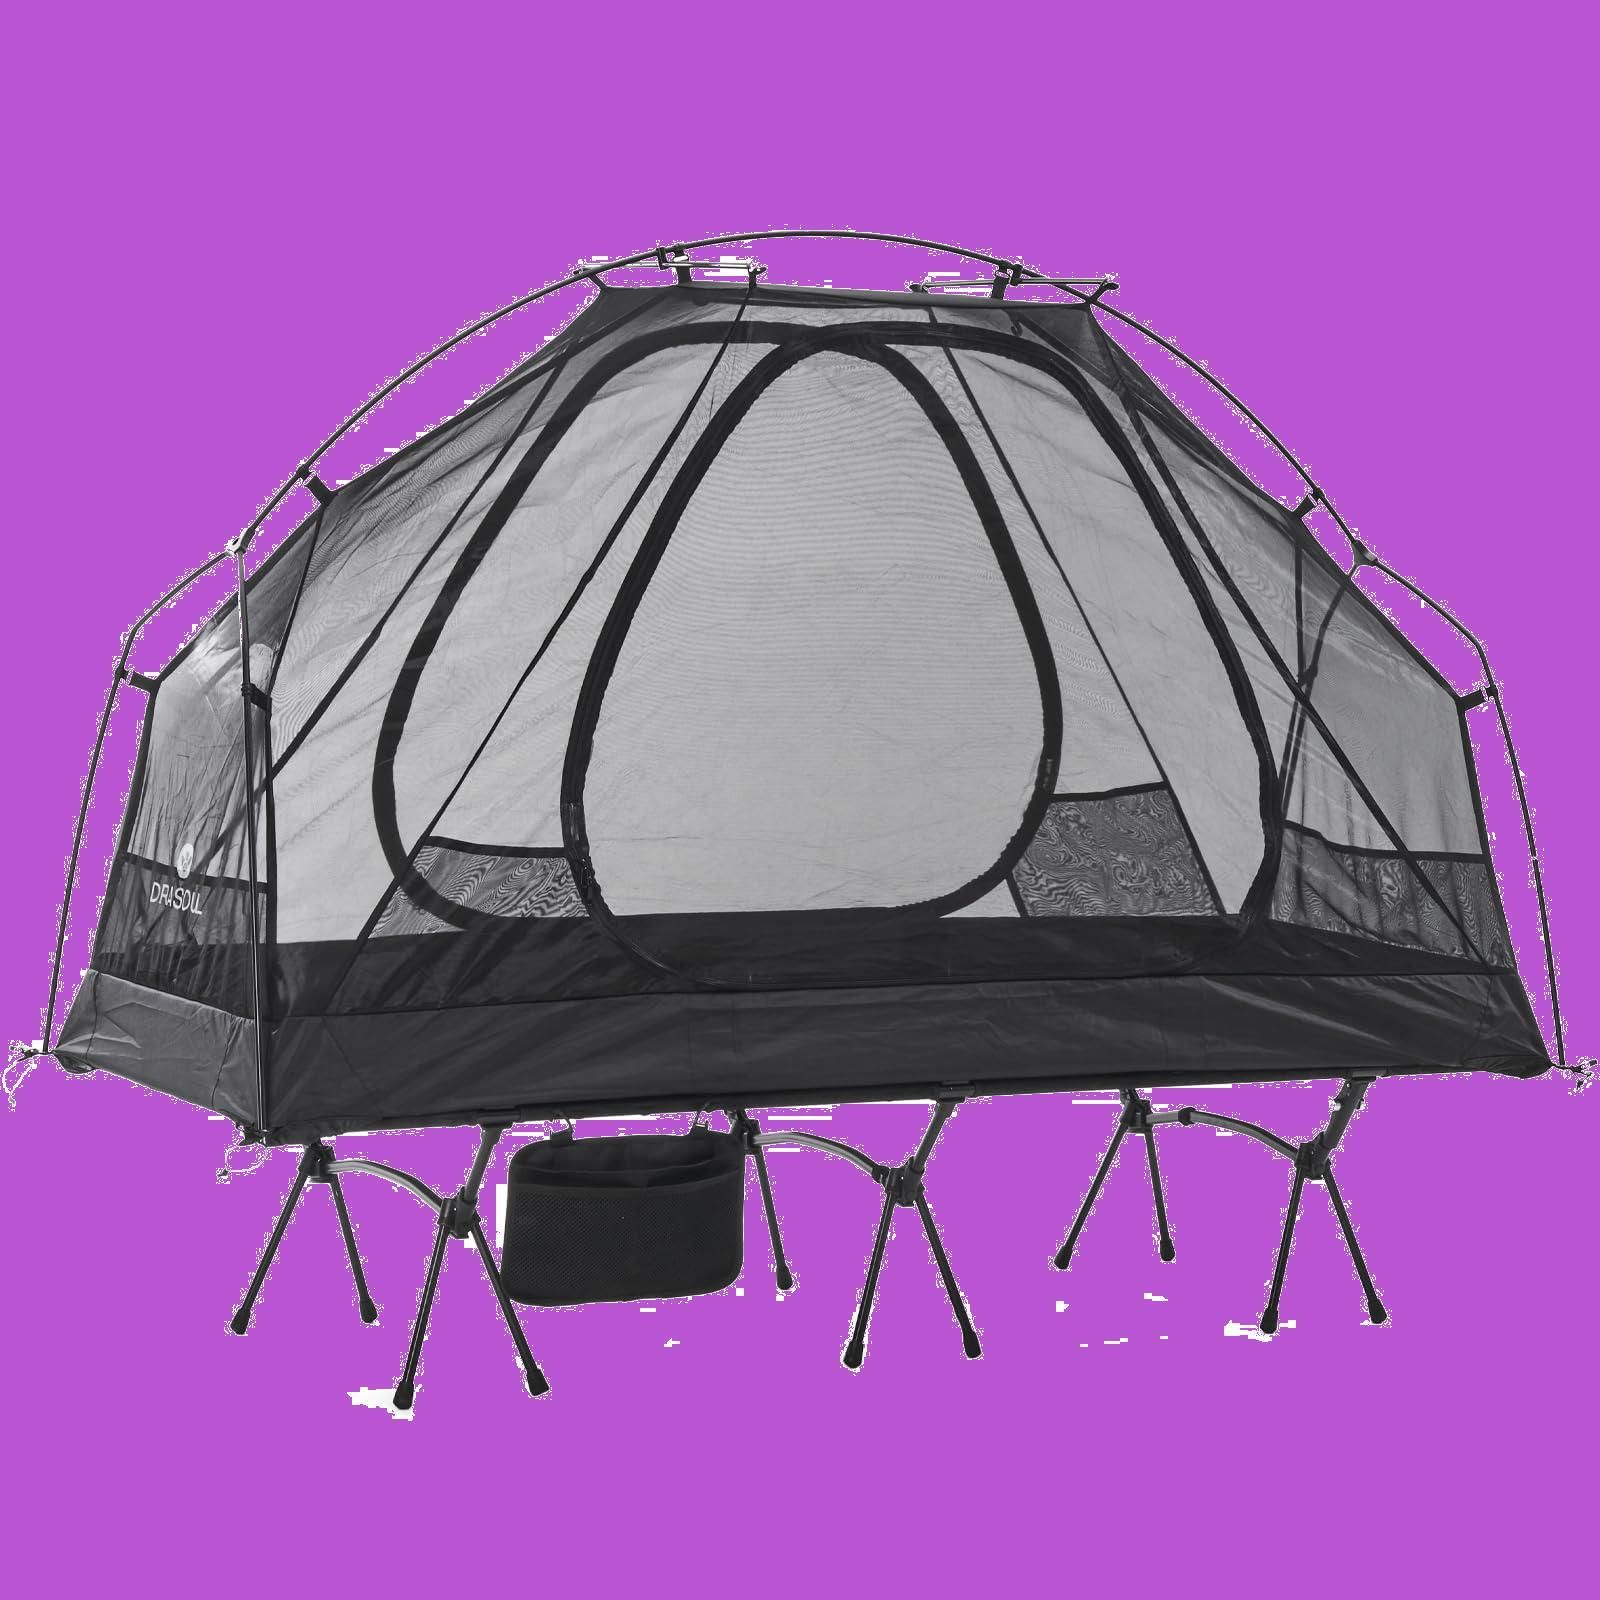 【数量限定】DRASOUL1-2人用アウトドア折りたたみベッドドーム自立式テントアウトドア二重層超軽量1.7kg重量メッシュ四季サンサン防風防水7075アルミ合金キャンプポール自立キャンプ観光性能プロフェッショナルテント屋内テント自転車テント簡易ベッドテントは